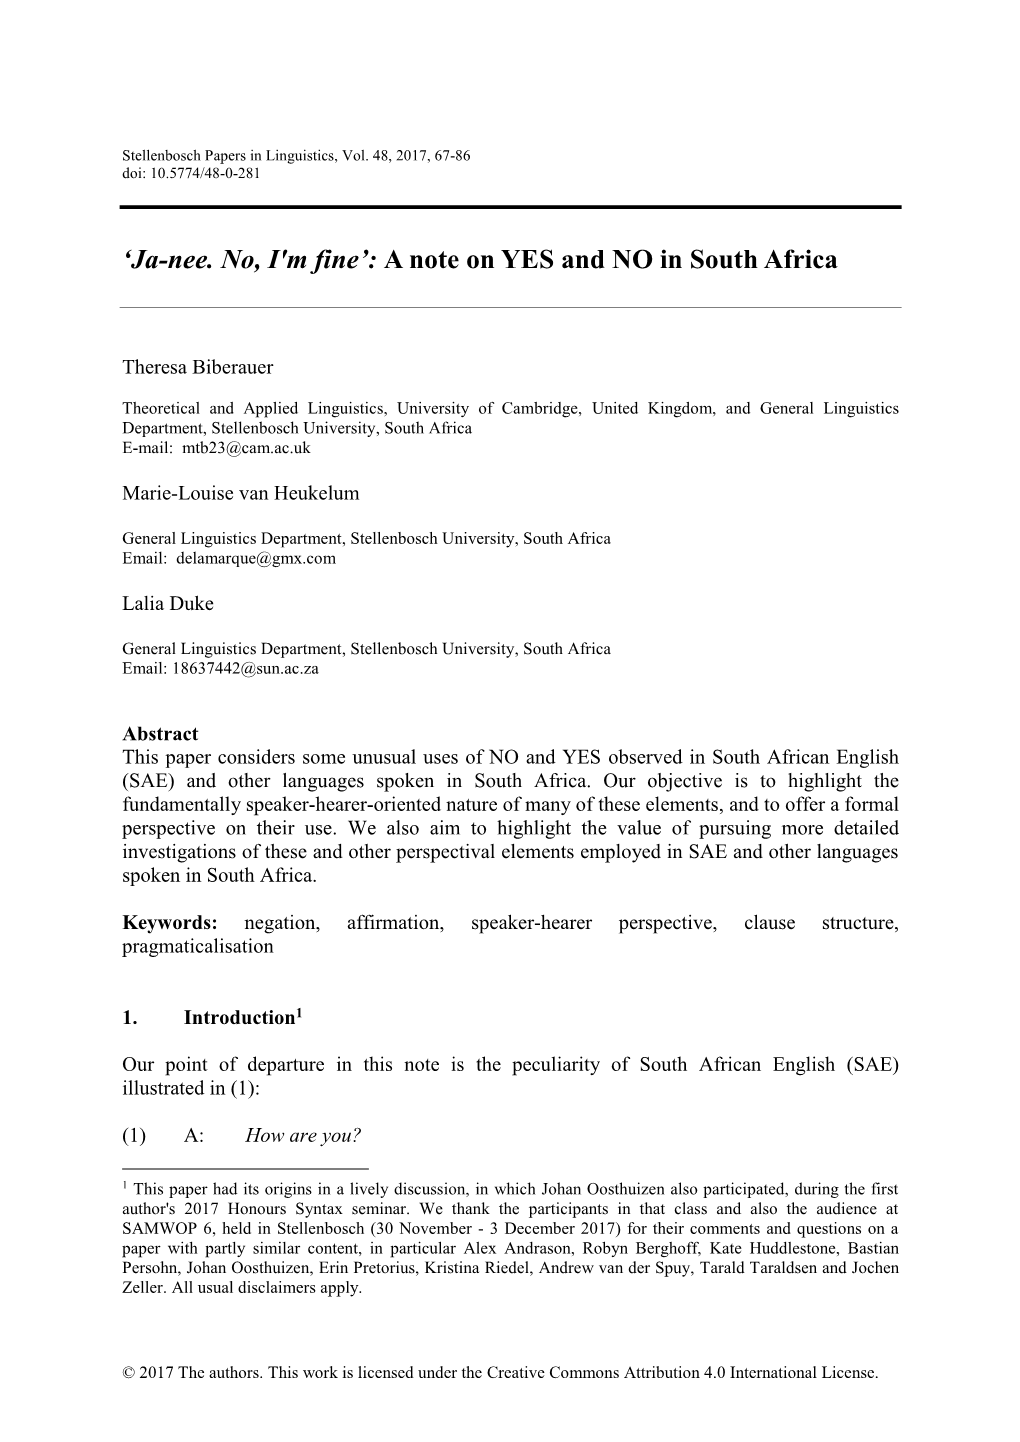 'Ja-Nee. No, I'm Fine': a Note on YES and NO in South Africa 69